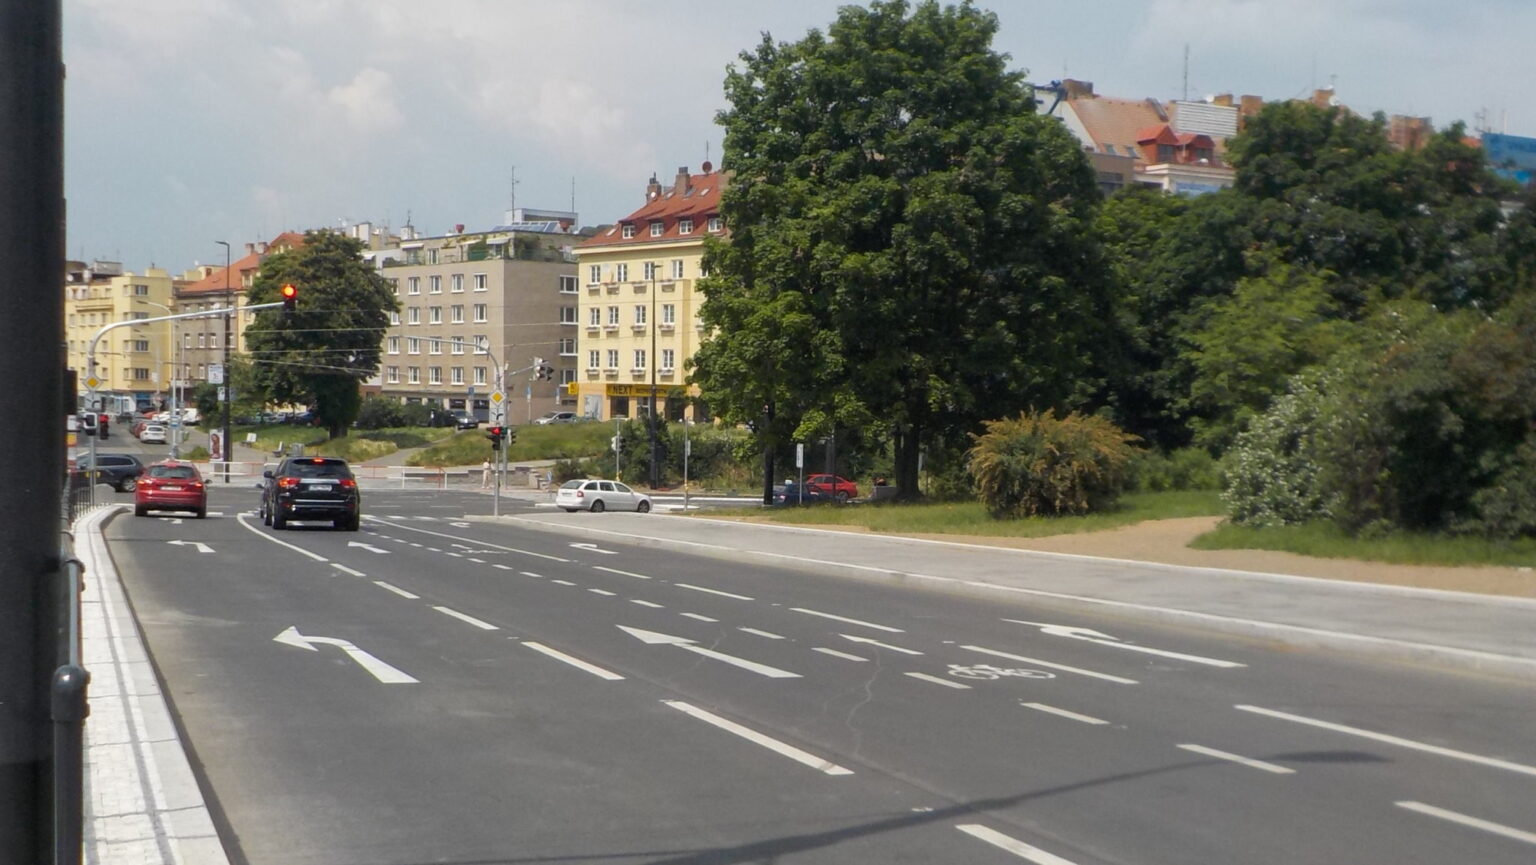 Průjezd kolem zastávek Pražského povstání směrem do centra (ve směru trasy A41) je možný ochranným cyklopruhem.  Zdroj: Vratislav Filler